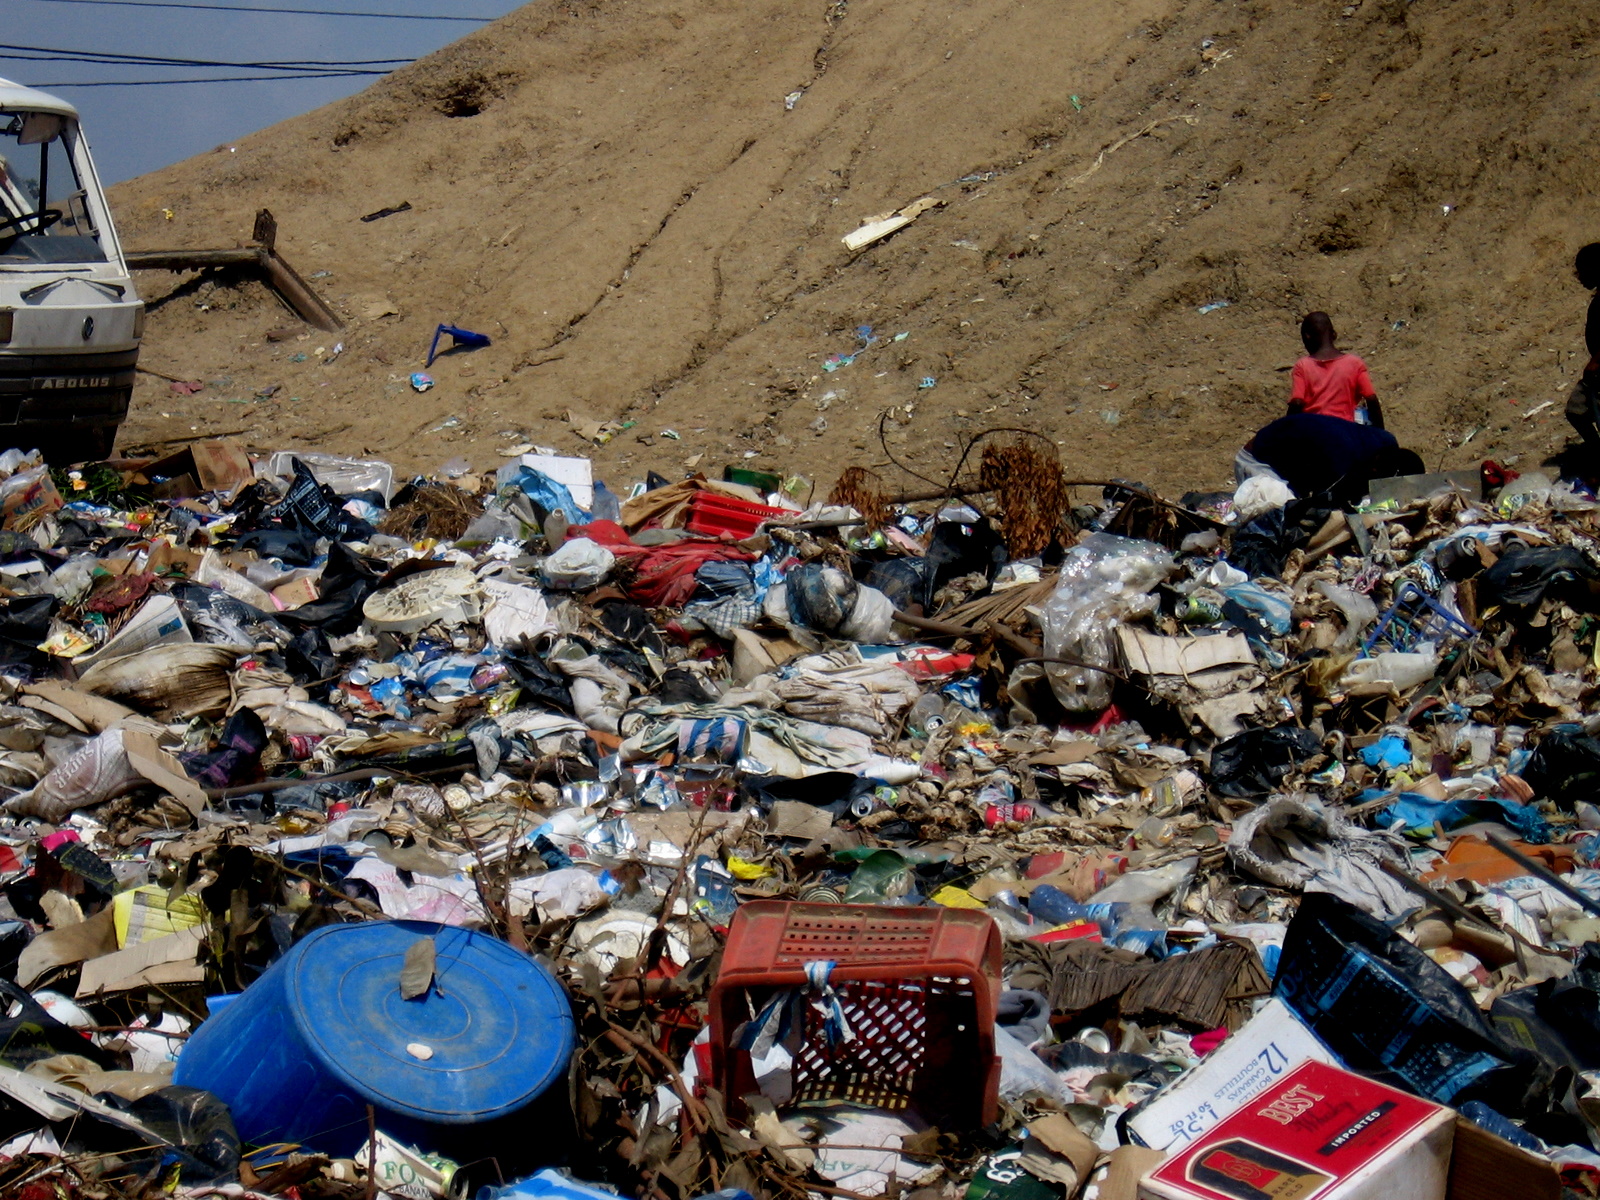 File:Rubbish-Angola.jpg - Wikimedia Commons